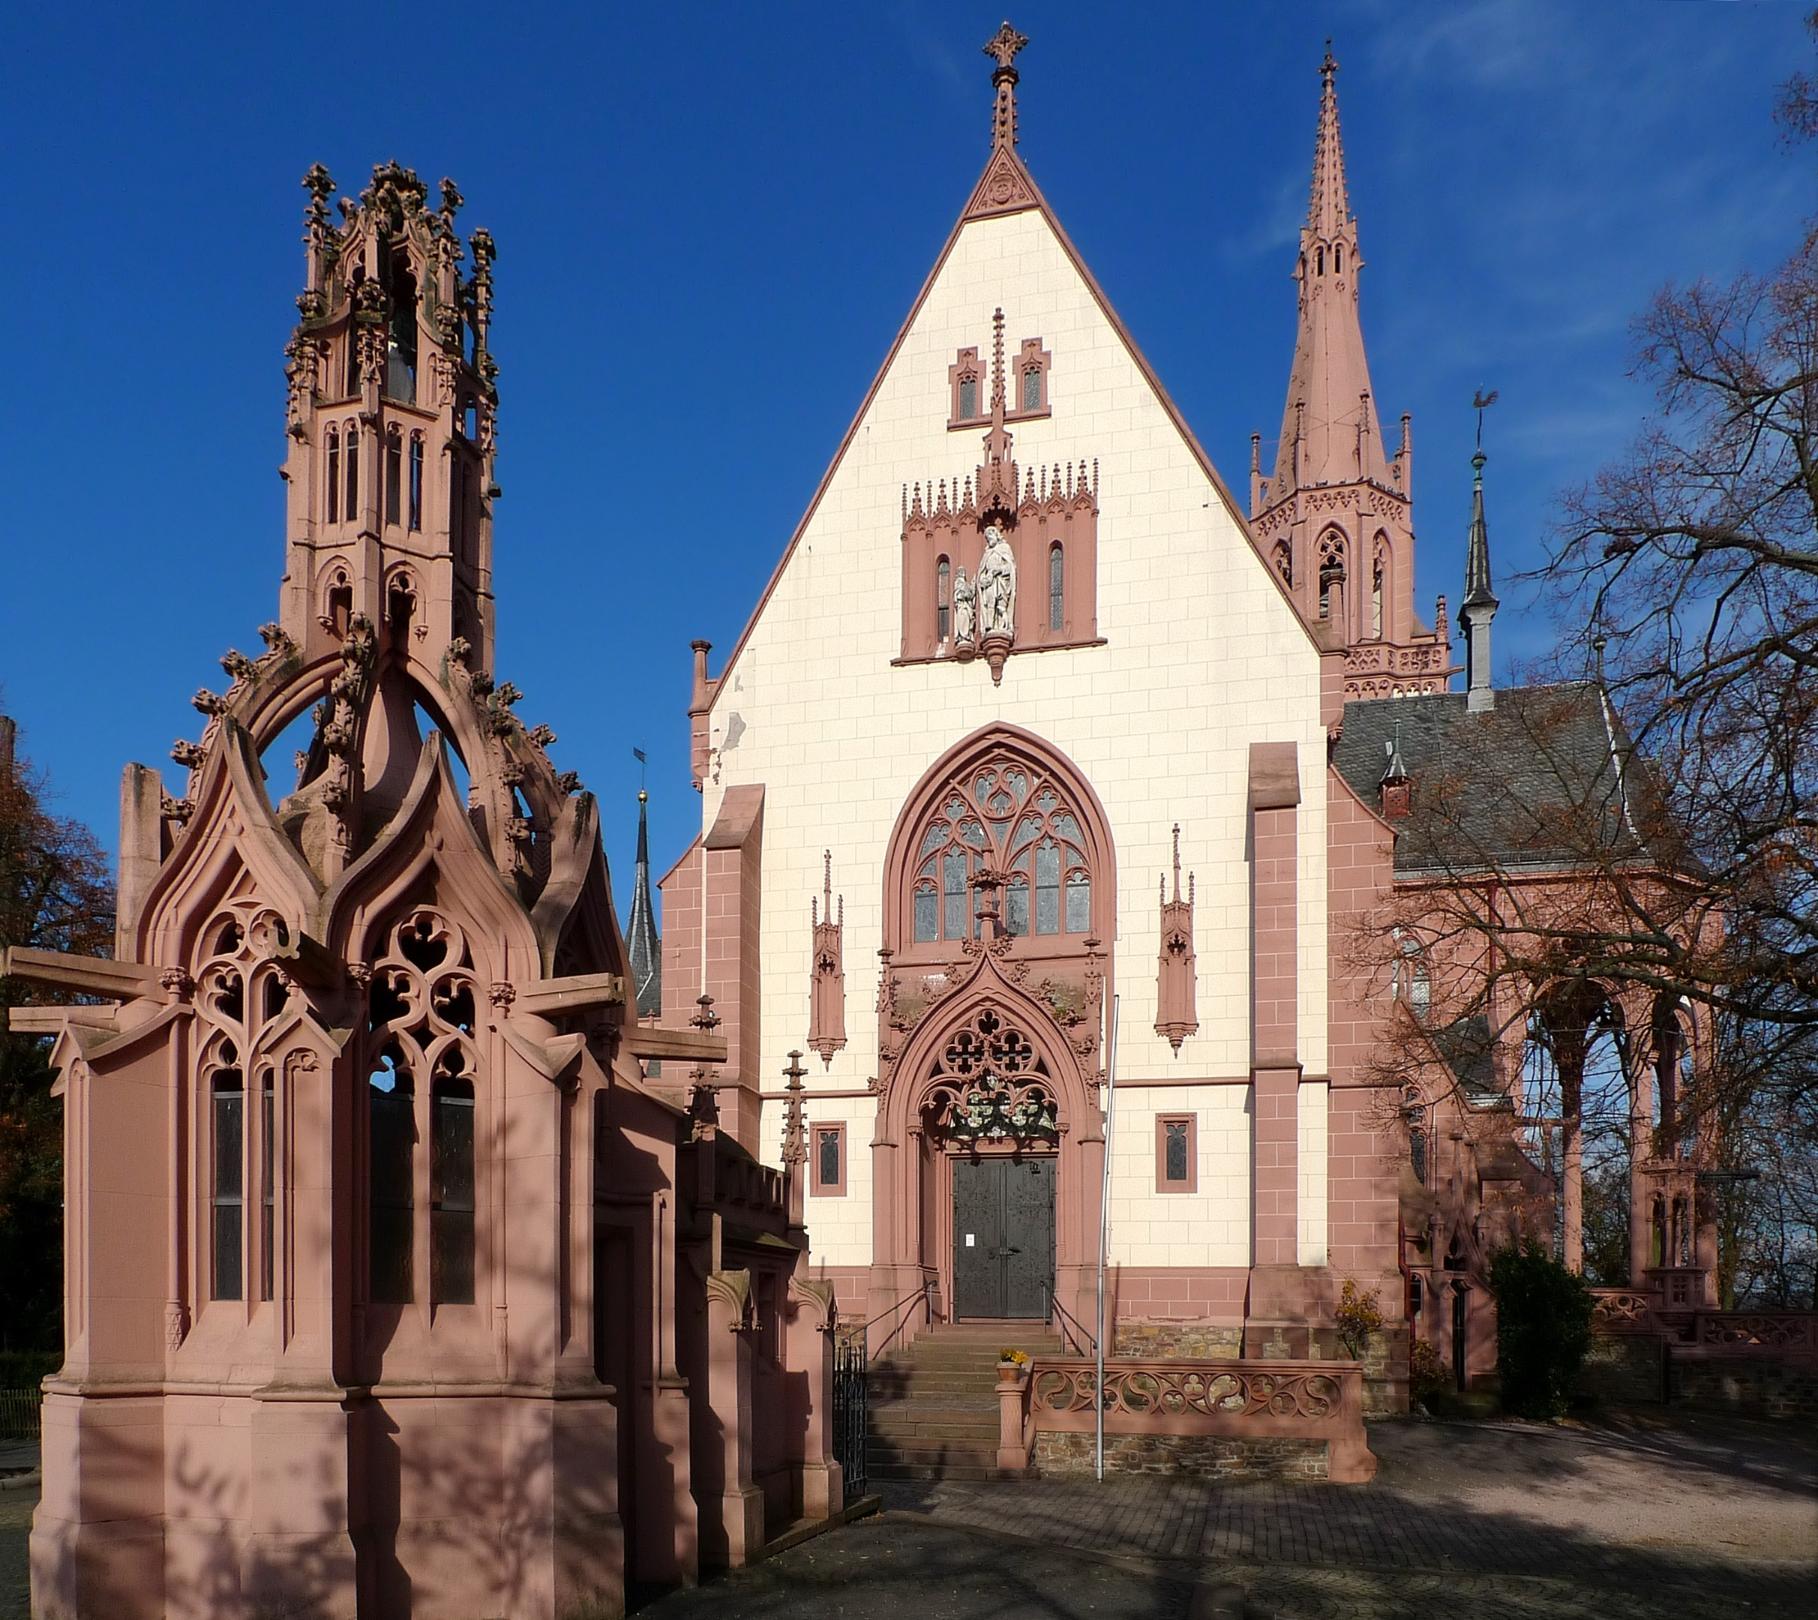 Rochuskapelle in Bingen, der Heilige mit dem Engel am Giebel, 19. Jh. (c) Von Manfred Heyde - Eigenes Werk, CC BY-SA 3.0, https://commons.wikimedia.org/w/index.php?curid=5153428